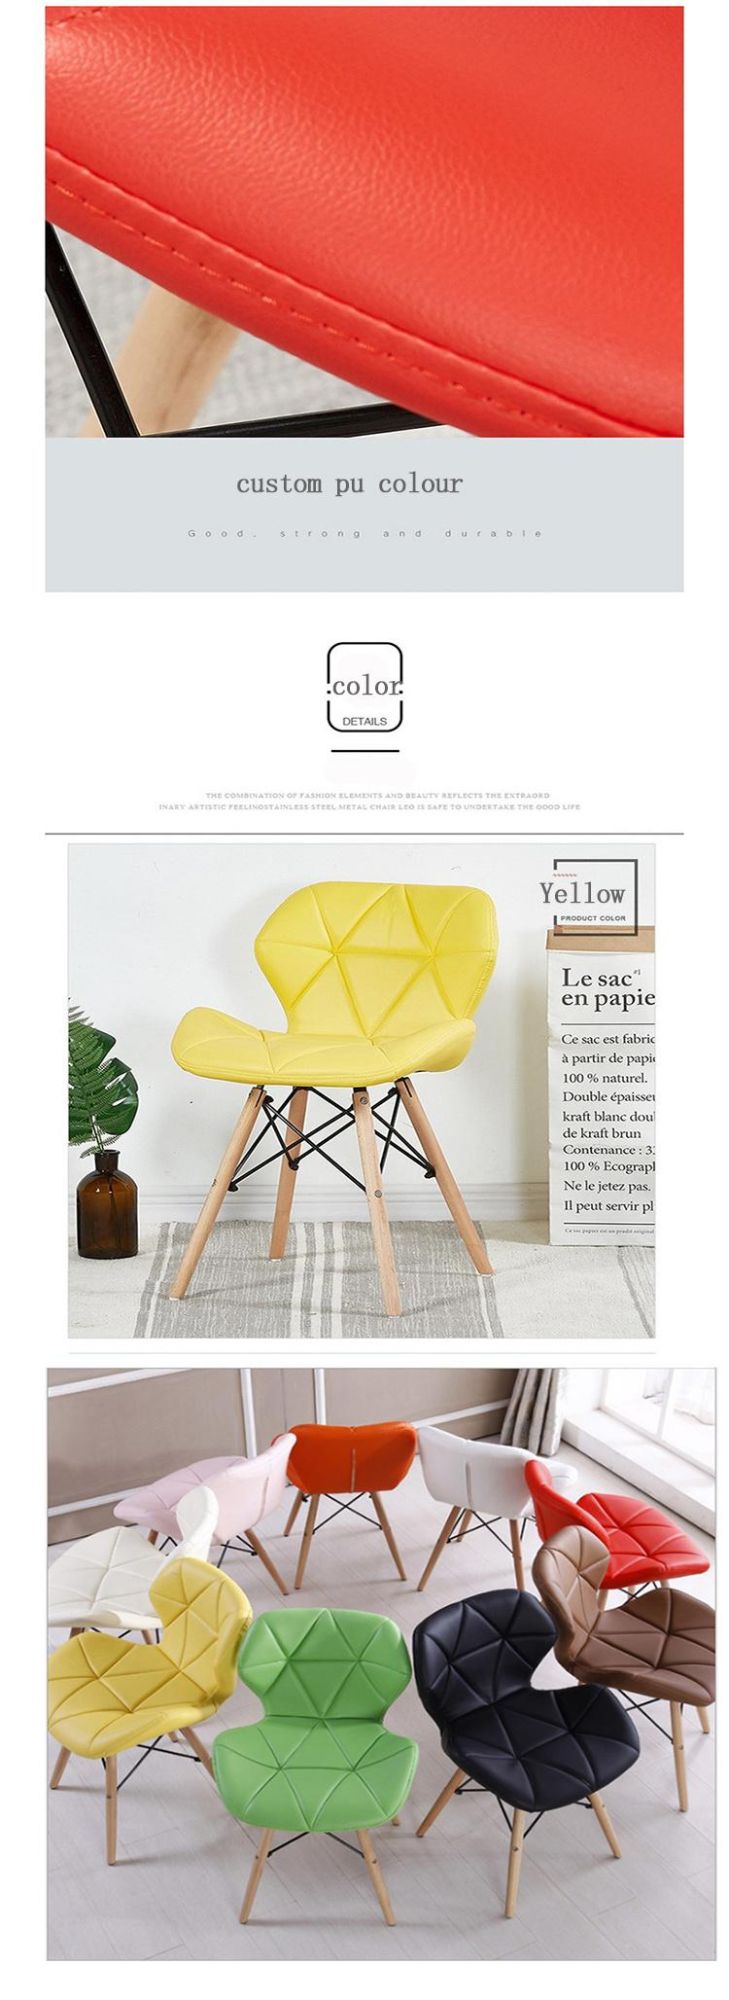 Fashion Villa Traditional Plus Size PU Dining Chair White Colour Radar Chair Wood Leg Restaurant Chair